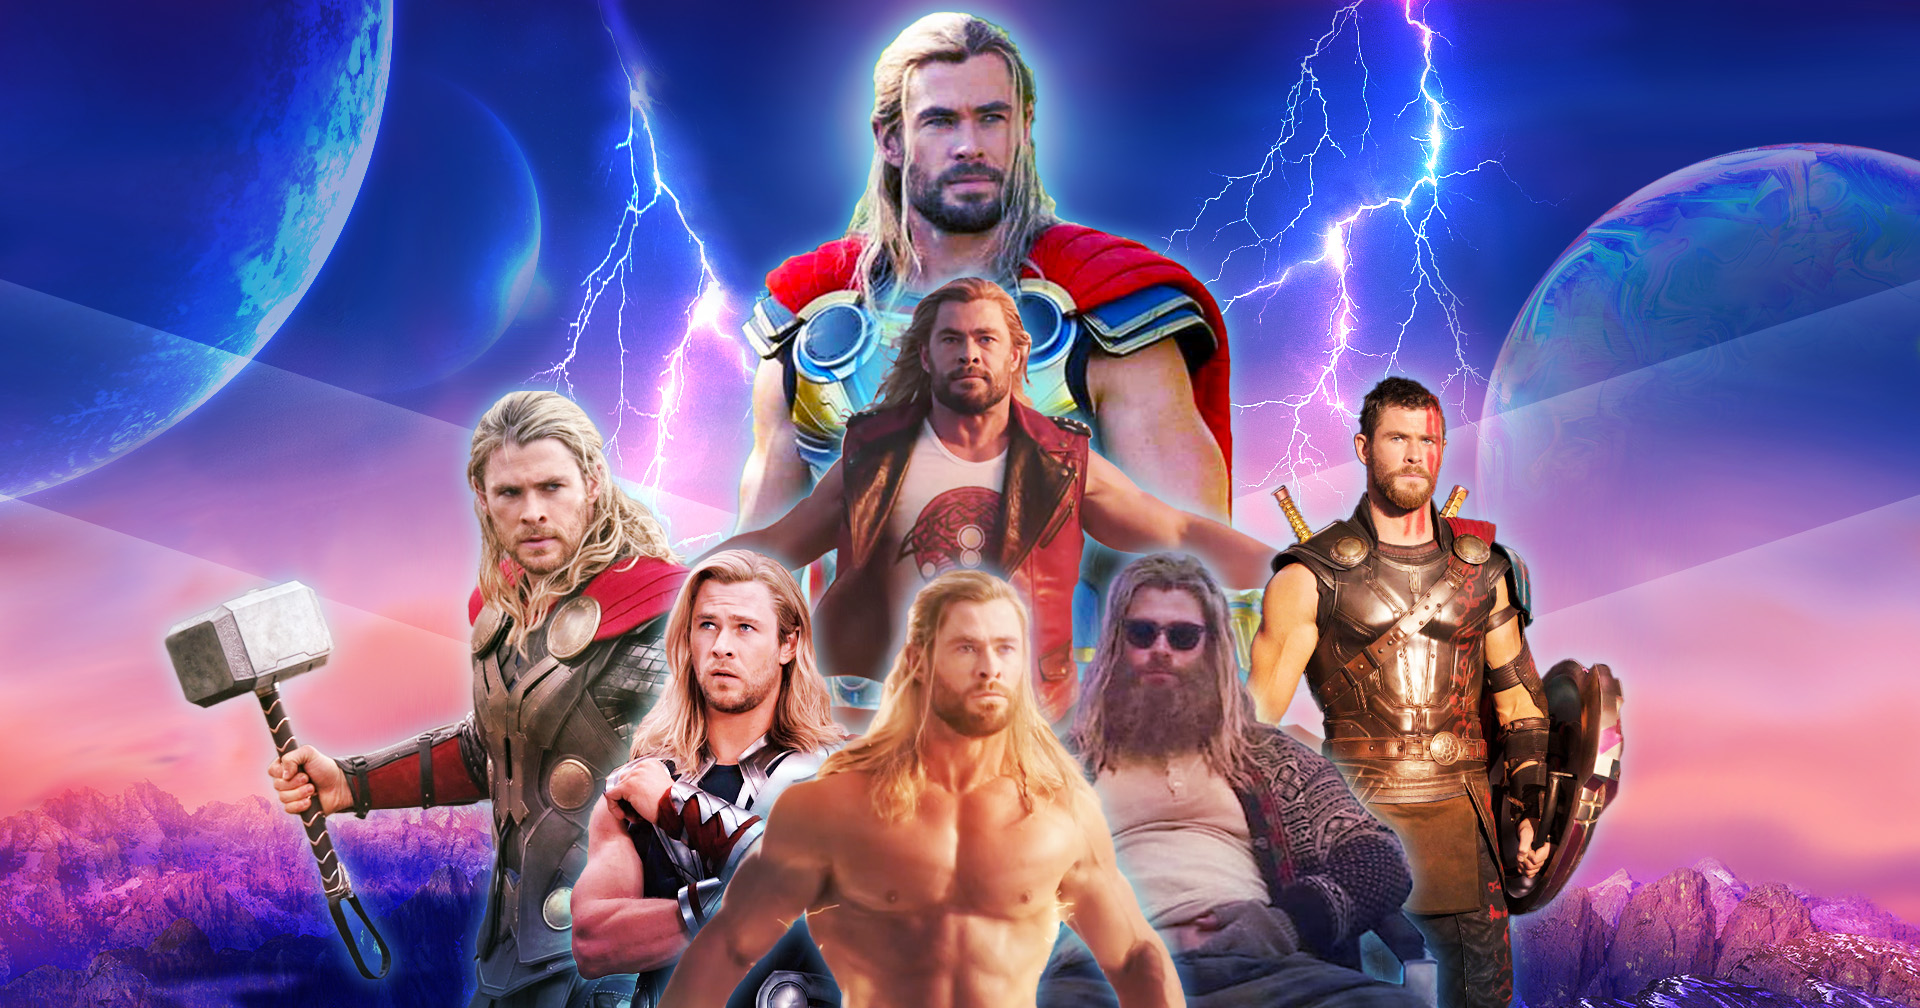 ตามติดชีวิตเทพเจ้าสายฟ้า Thor กว่าจะมาถึง Thor Love and Thunder ต้องผ่านอะไรมาบ้าง